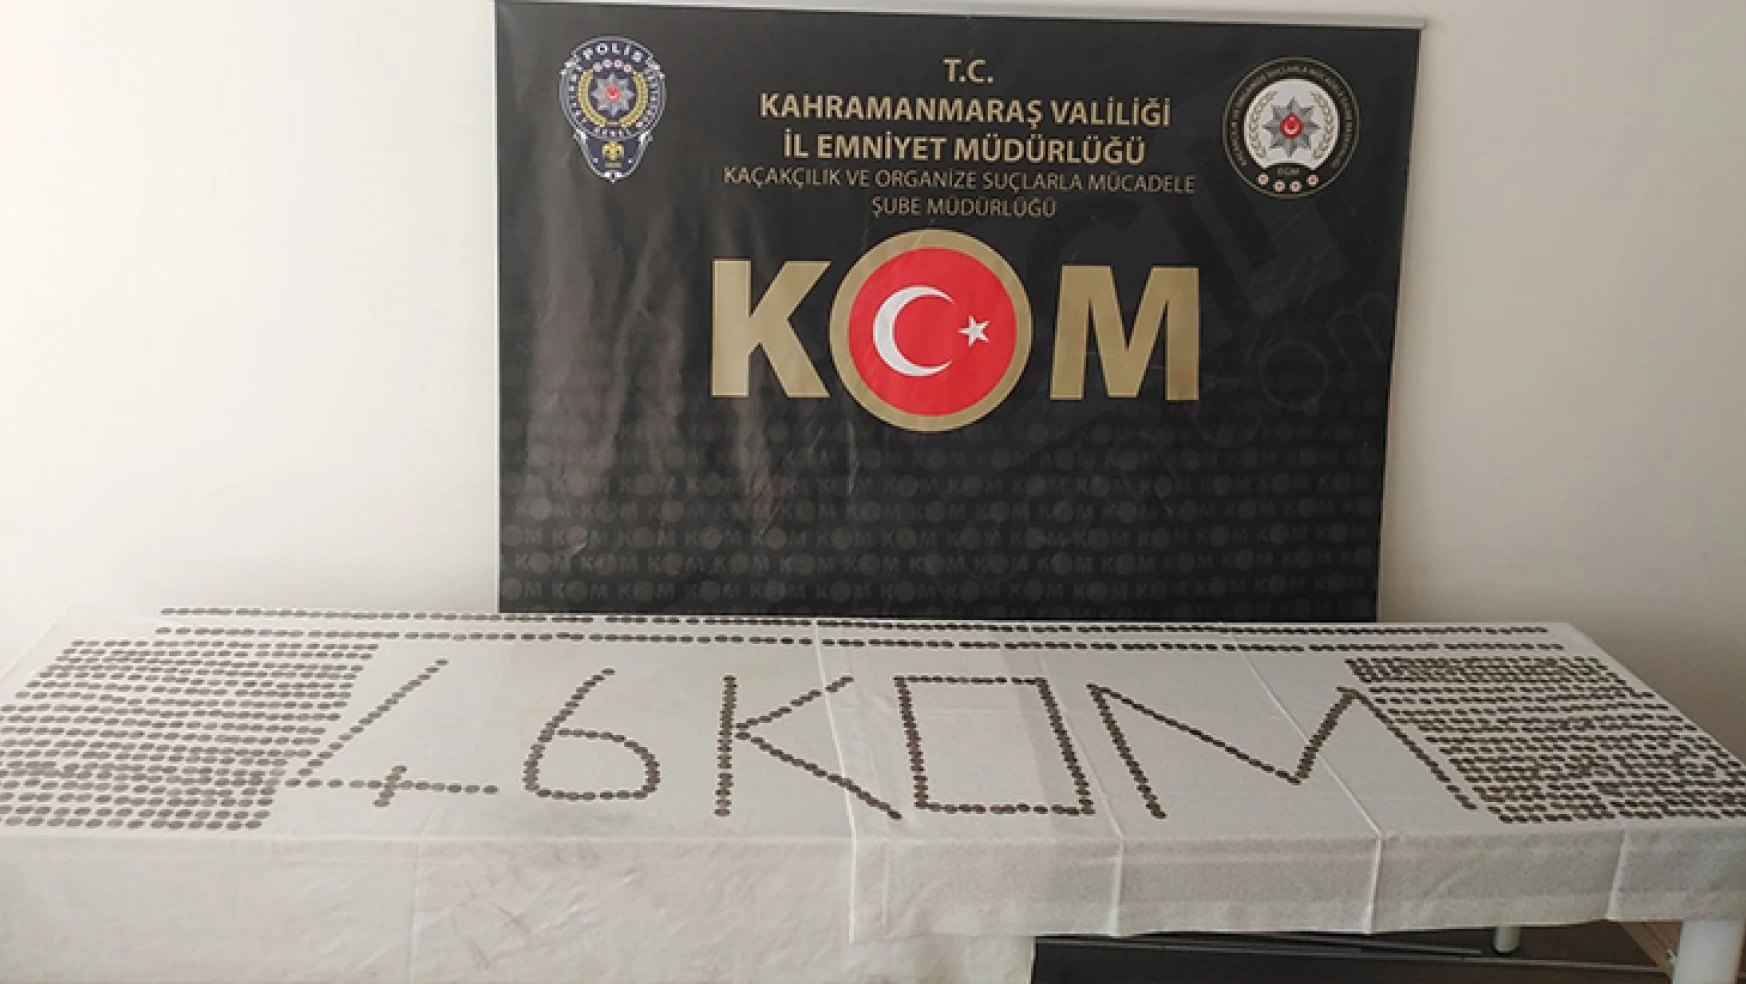 Kahramanmaraş'ta tarihi eser kaçakçılığına göz açtırılmıyor: 1154 adet sikke bulundu